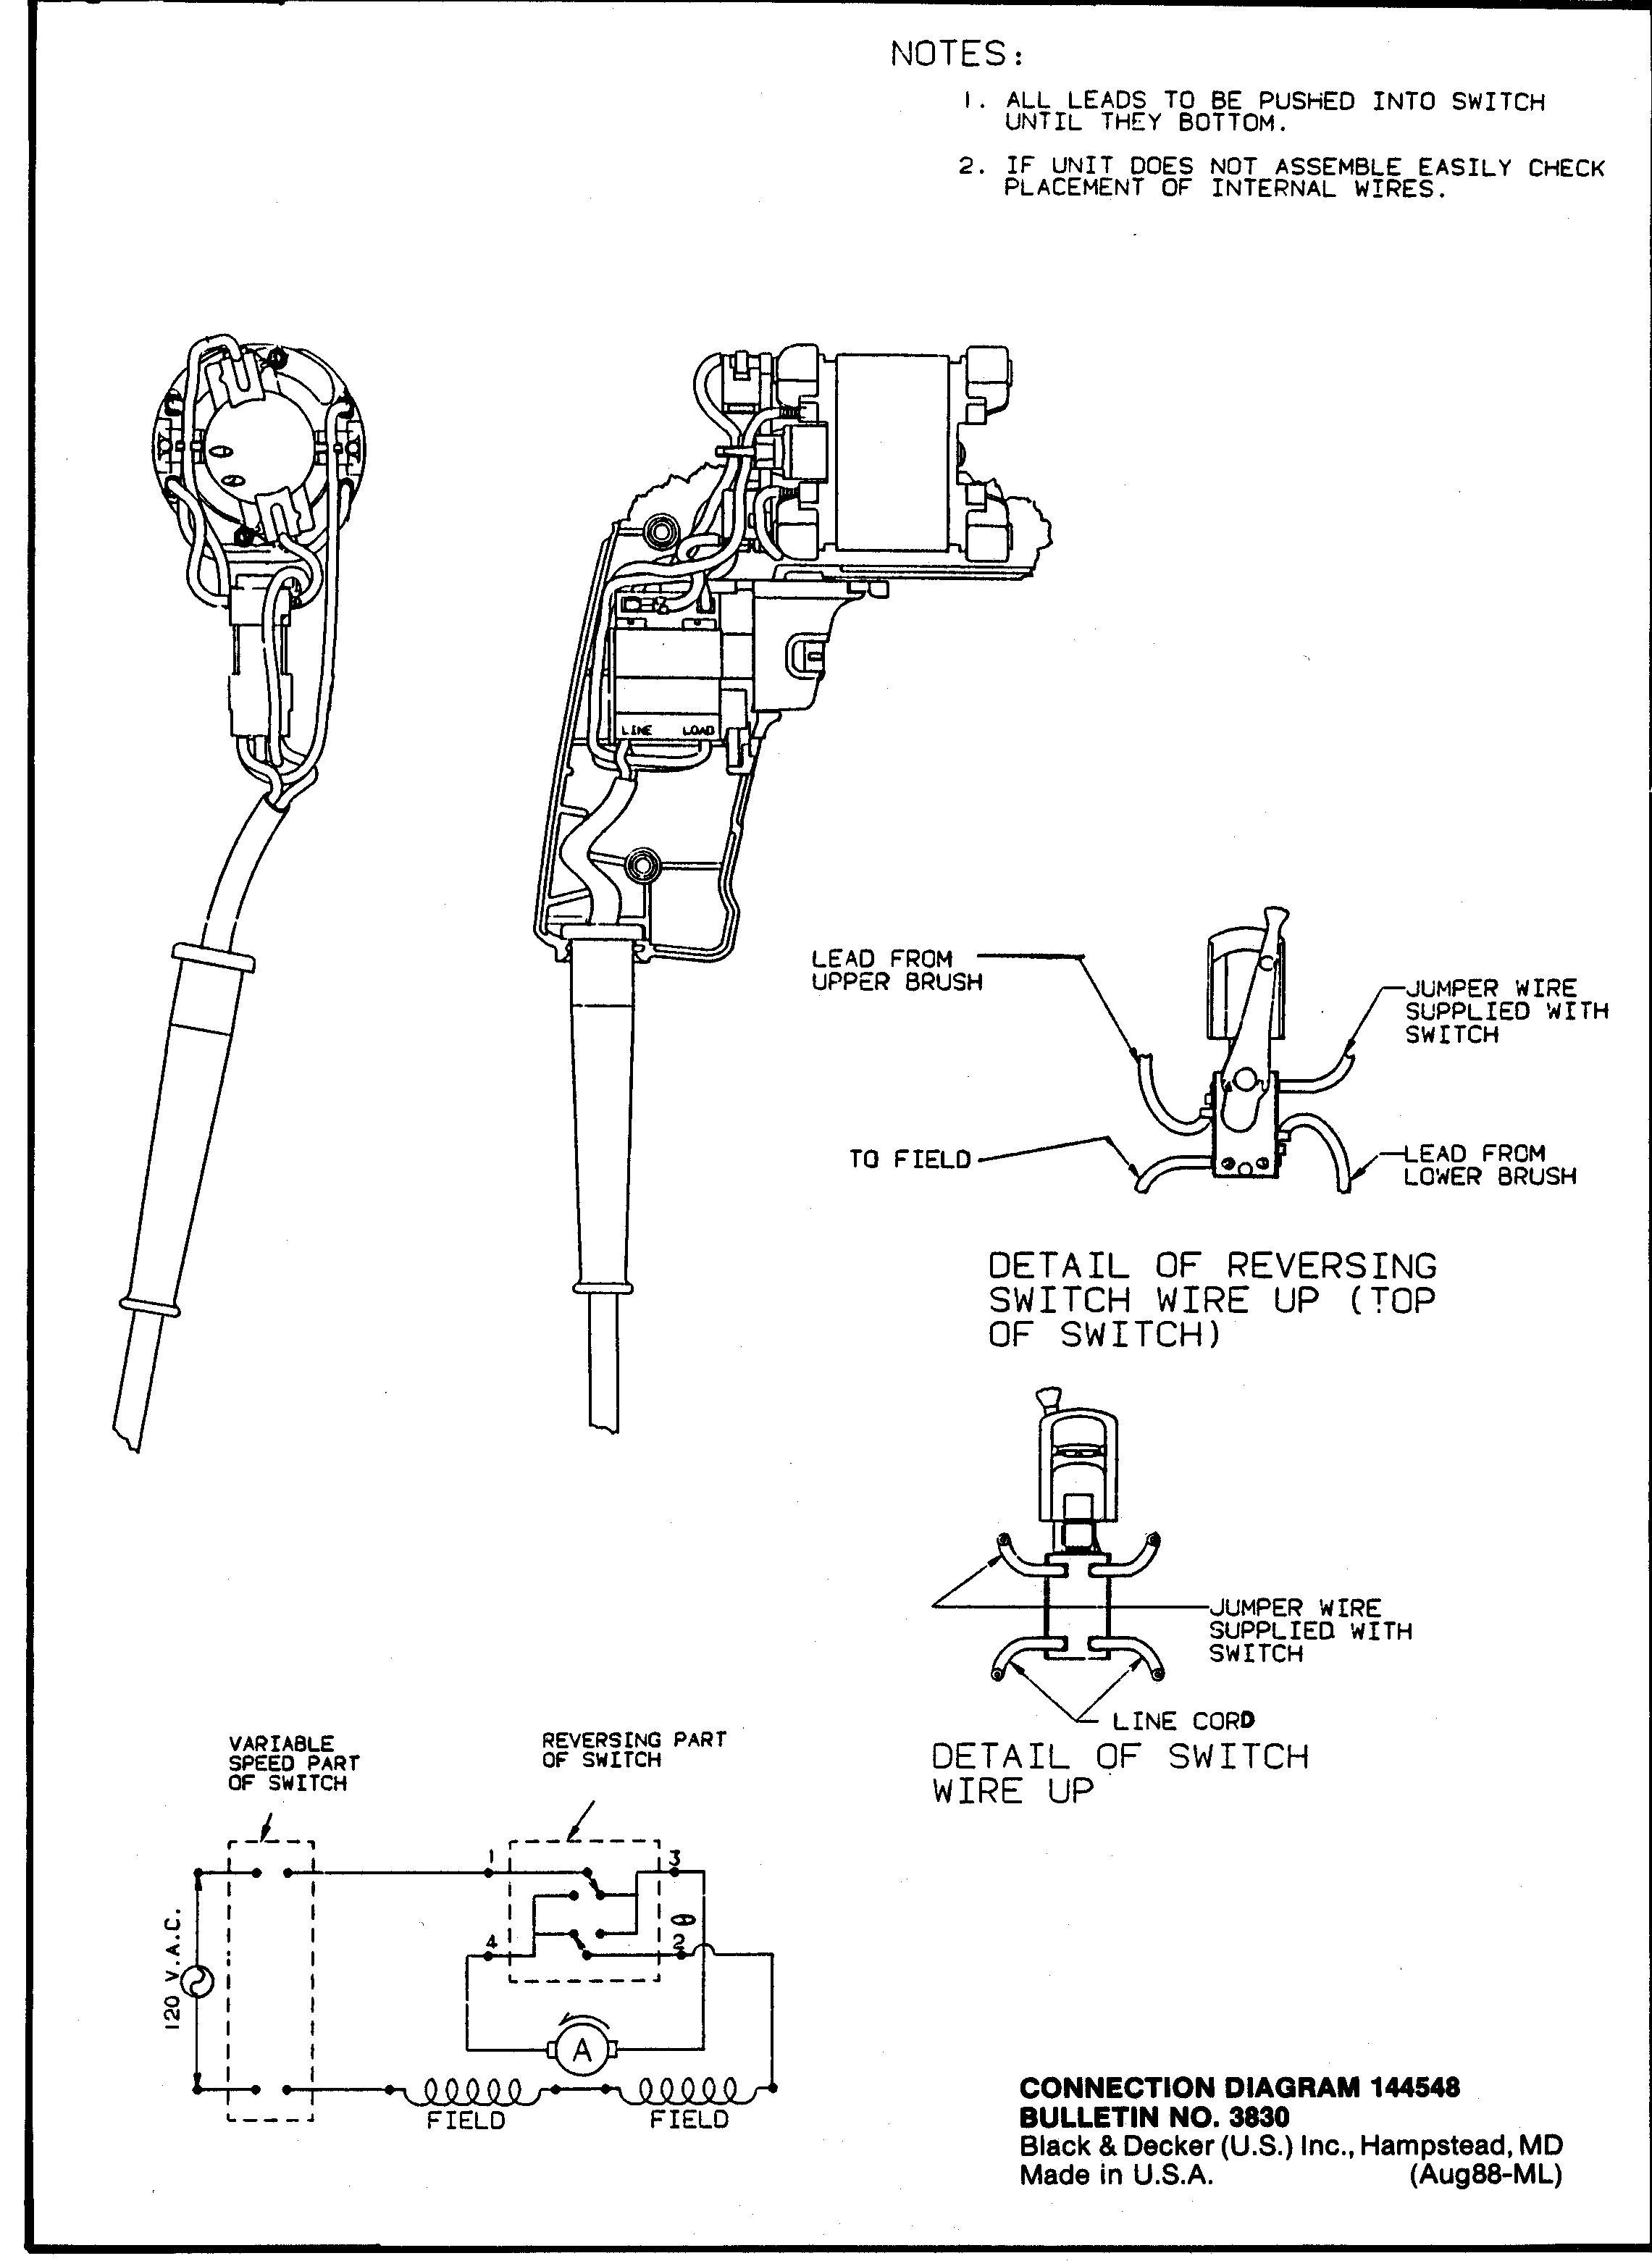 12 Volt Hydraulic Pump Wiring Diagram Wiring Schematics Power Tools Wiring Diagram Library